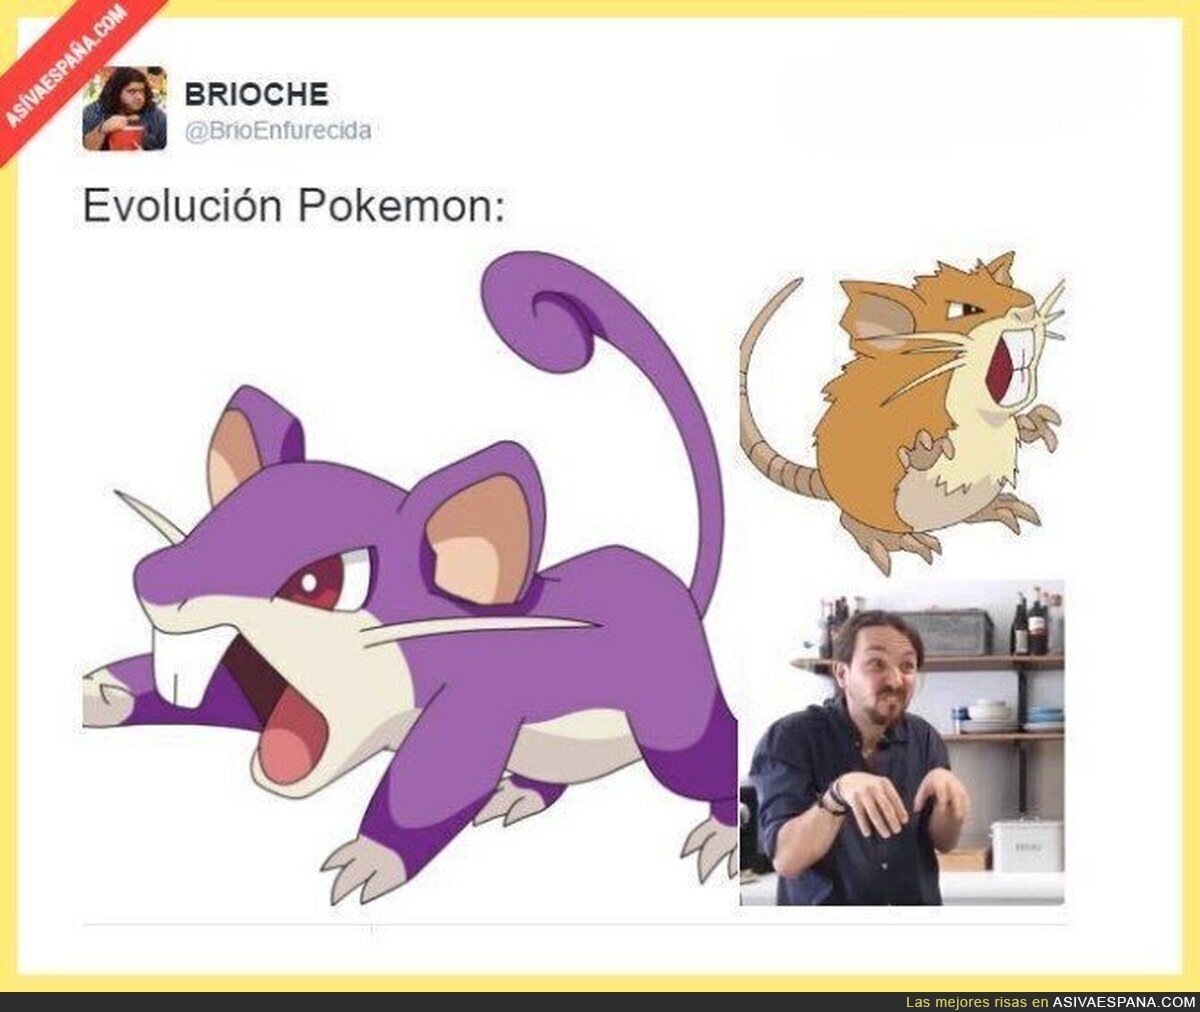 La evolución Pokémon que no conocíamos